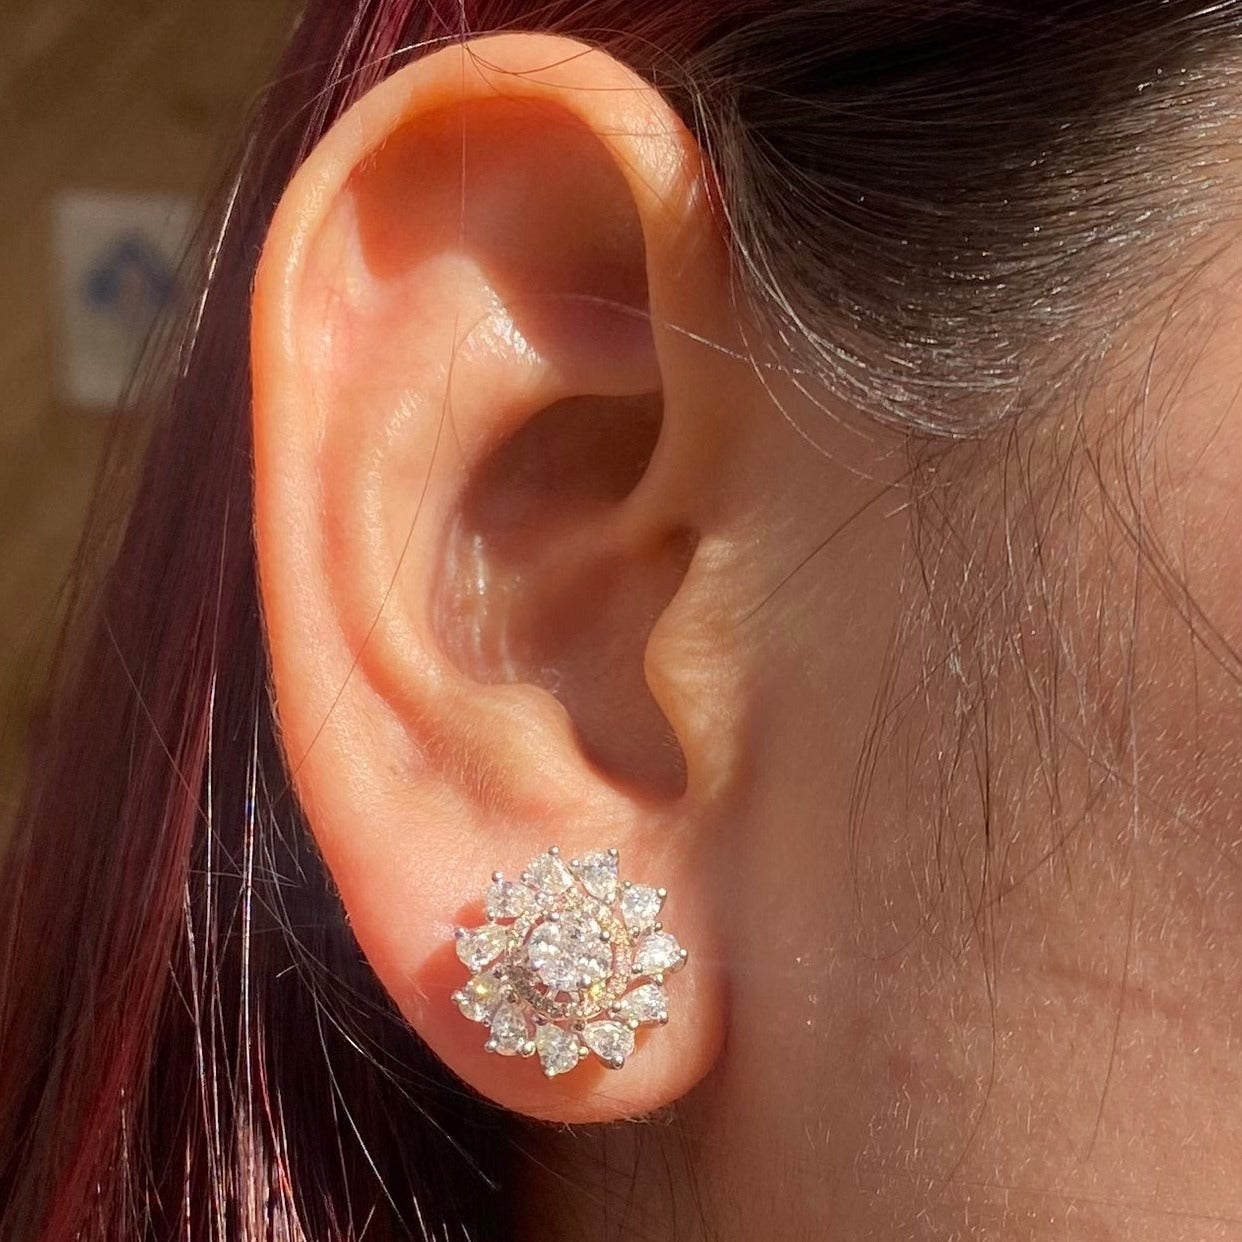 Influitive Diamond Earrings - Fiona Diamonds - Fiona Diamonds